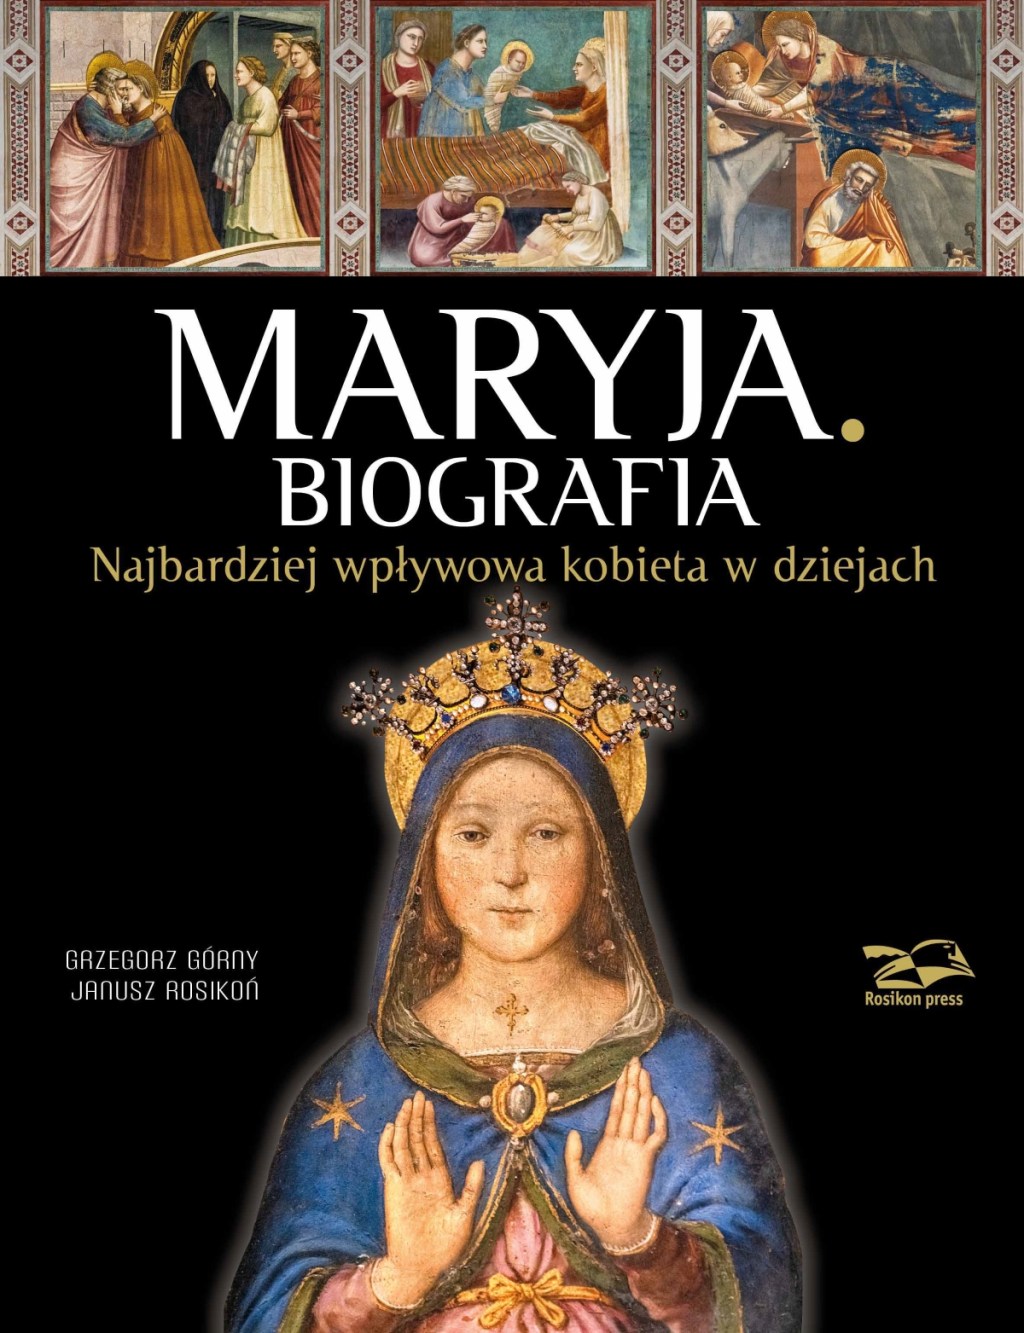 okładka książki "Maryja. Biografia" wydanej przez Rosikon Press